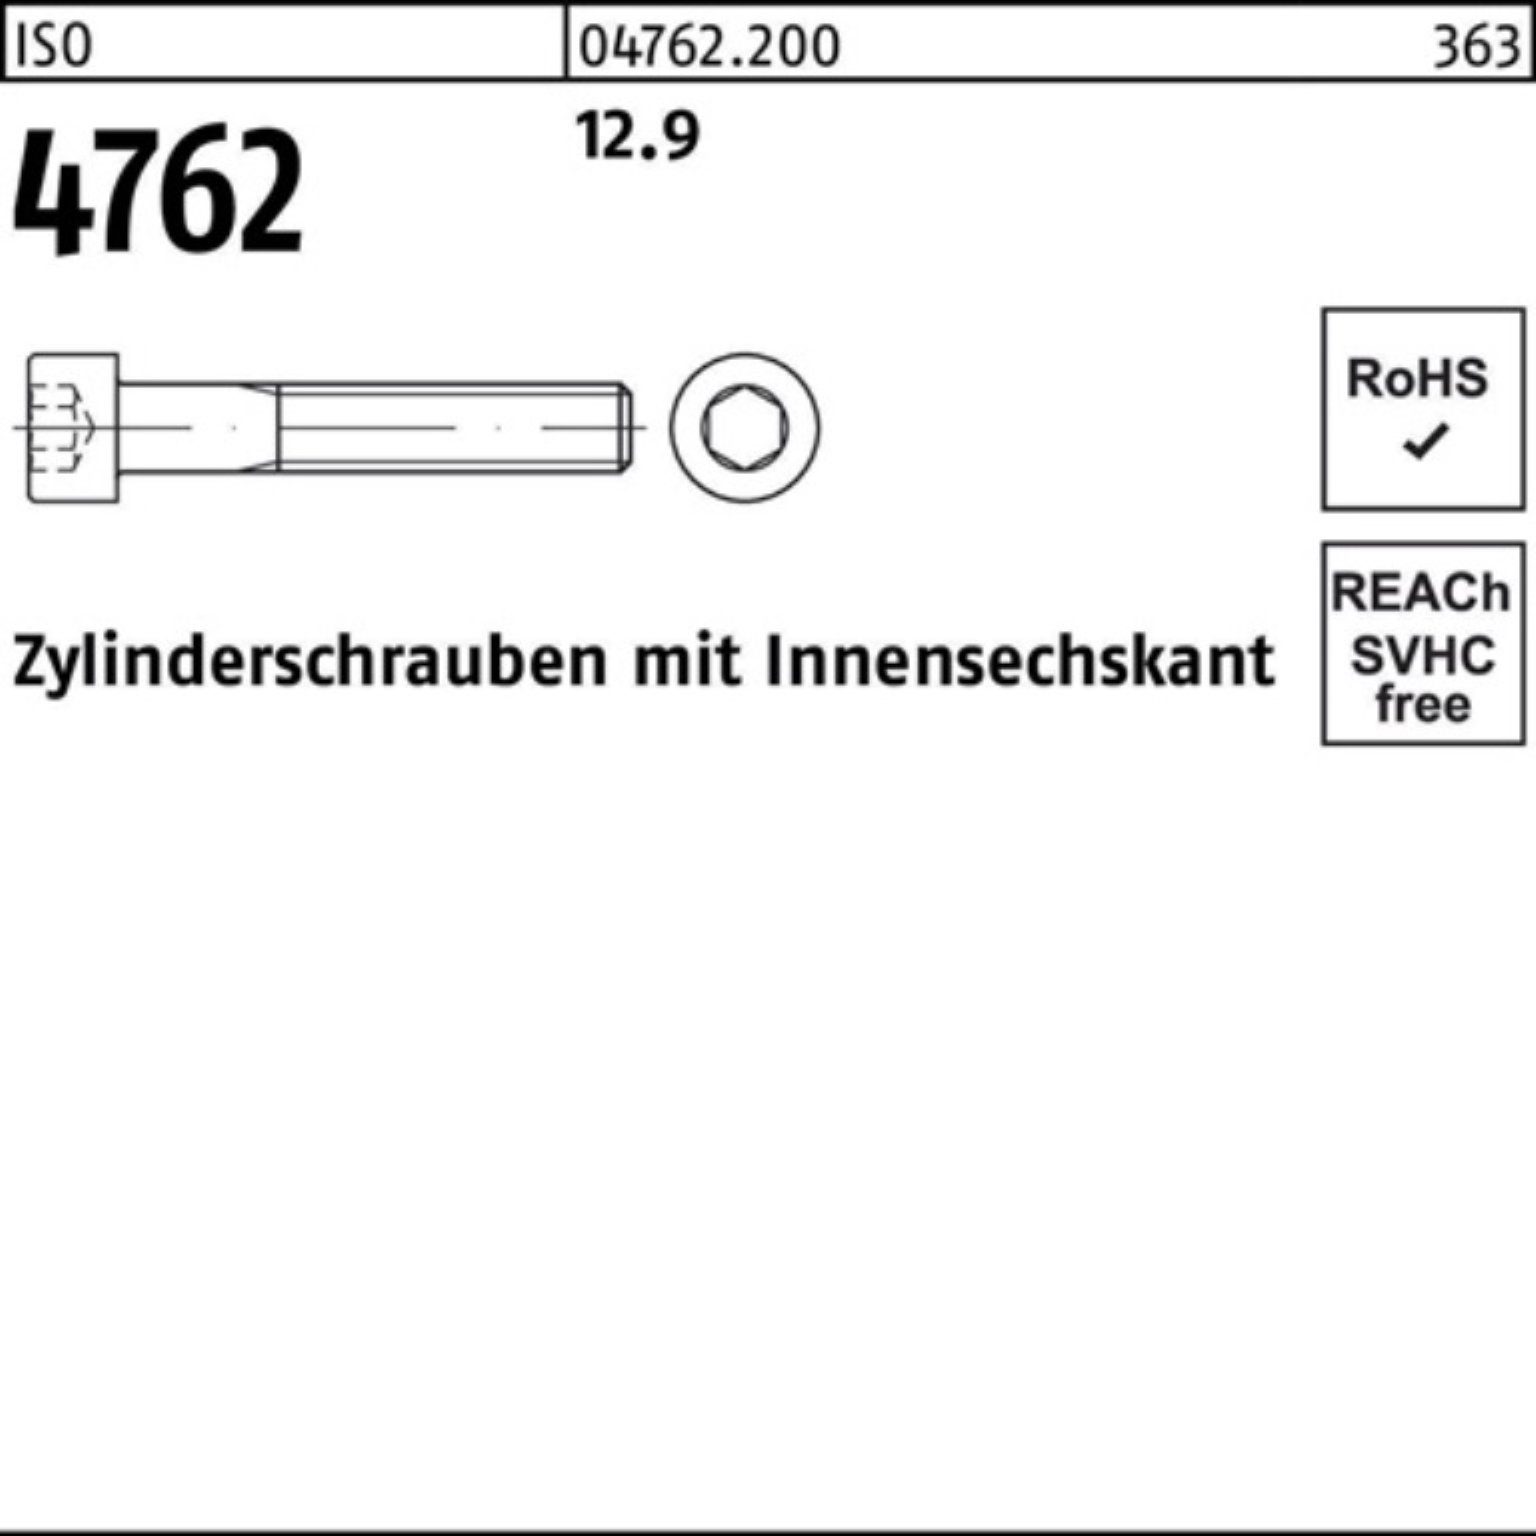 Pack Zylinderschraube 4762 Innen-6kt 230 100er M8x Stück Reyher Zylinderschraube 12.9 ISO 50